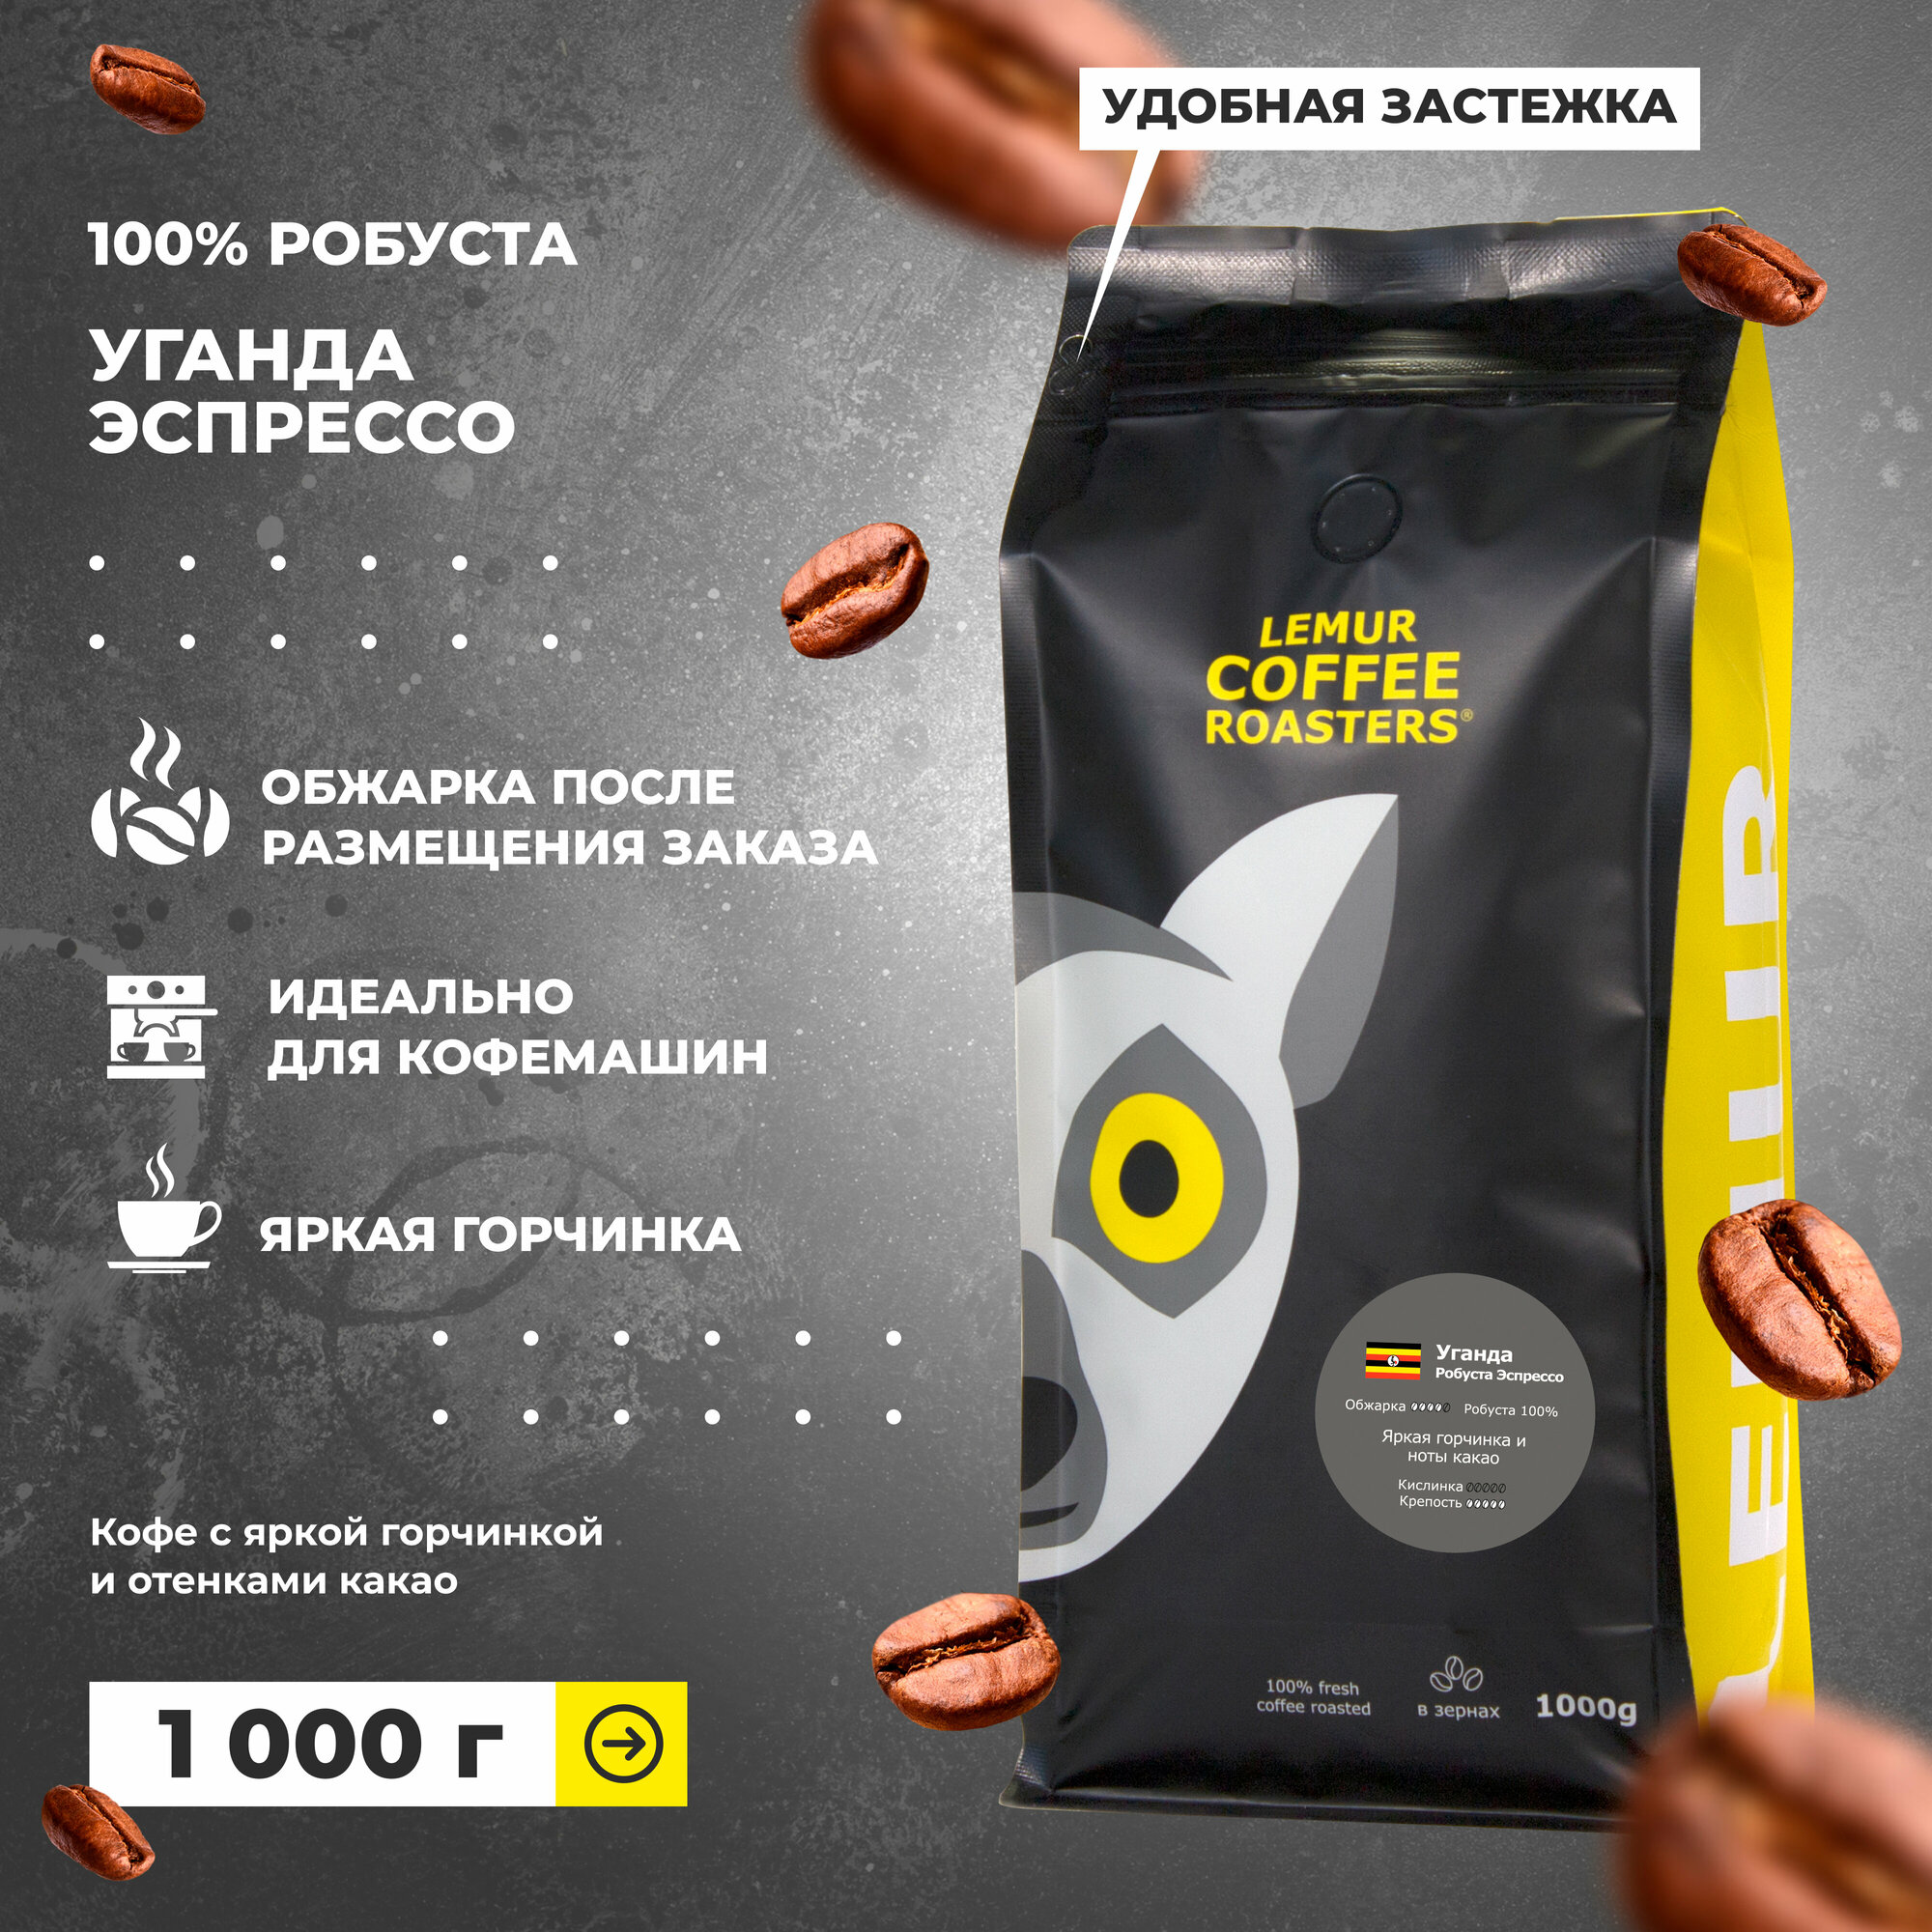 Свежеобжаренный кофе в зернах Уганда робуста Эспрессо Lemur Coffee Roasters, 1кг